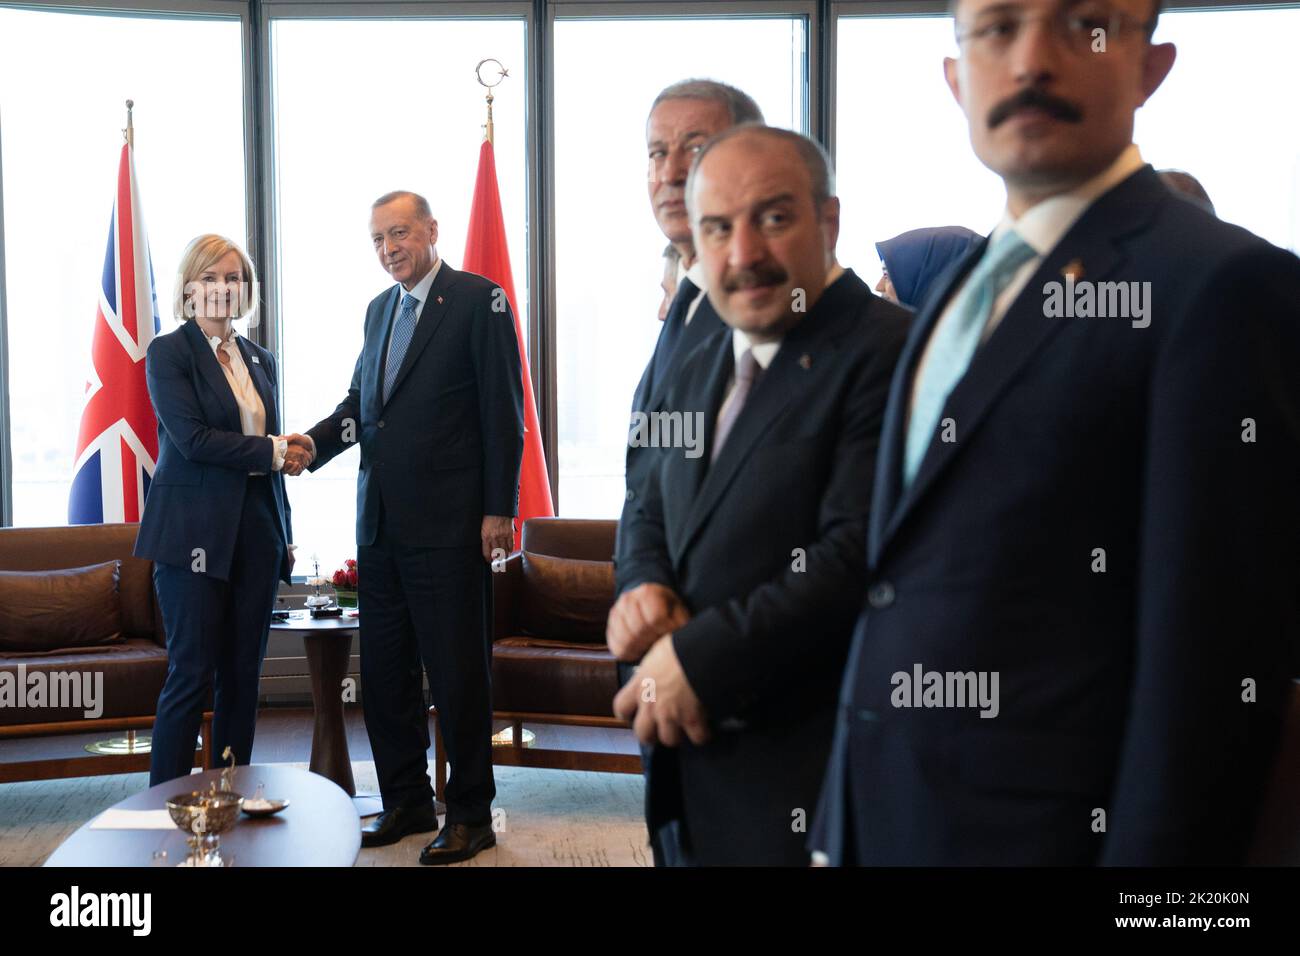 La Primera Ministra Liz Truss celebra una reunión bilateral con el Presidente Erdogan, de Turquía, en el edificio de la Misión de Turquía en Nueva York durante su visita a los Estados Unidos para asistir a la Asamblea General de las Naciones Unidas de 77th. Fecha de la foto: Miércoles 21 de septiembre de 2022. Foto de stock